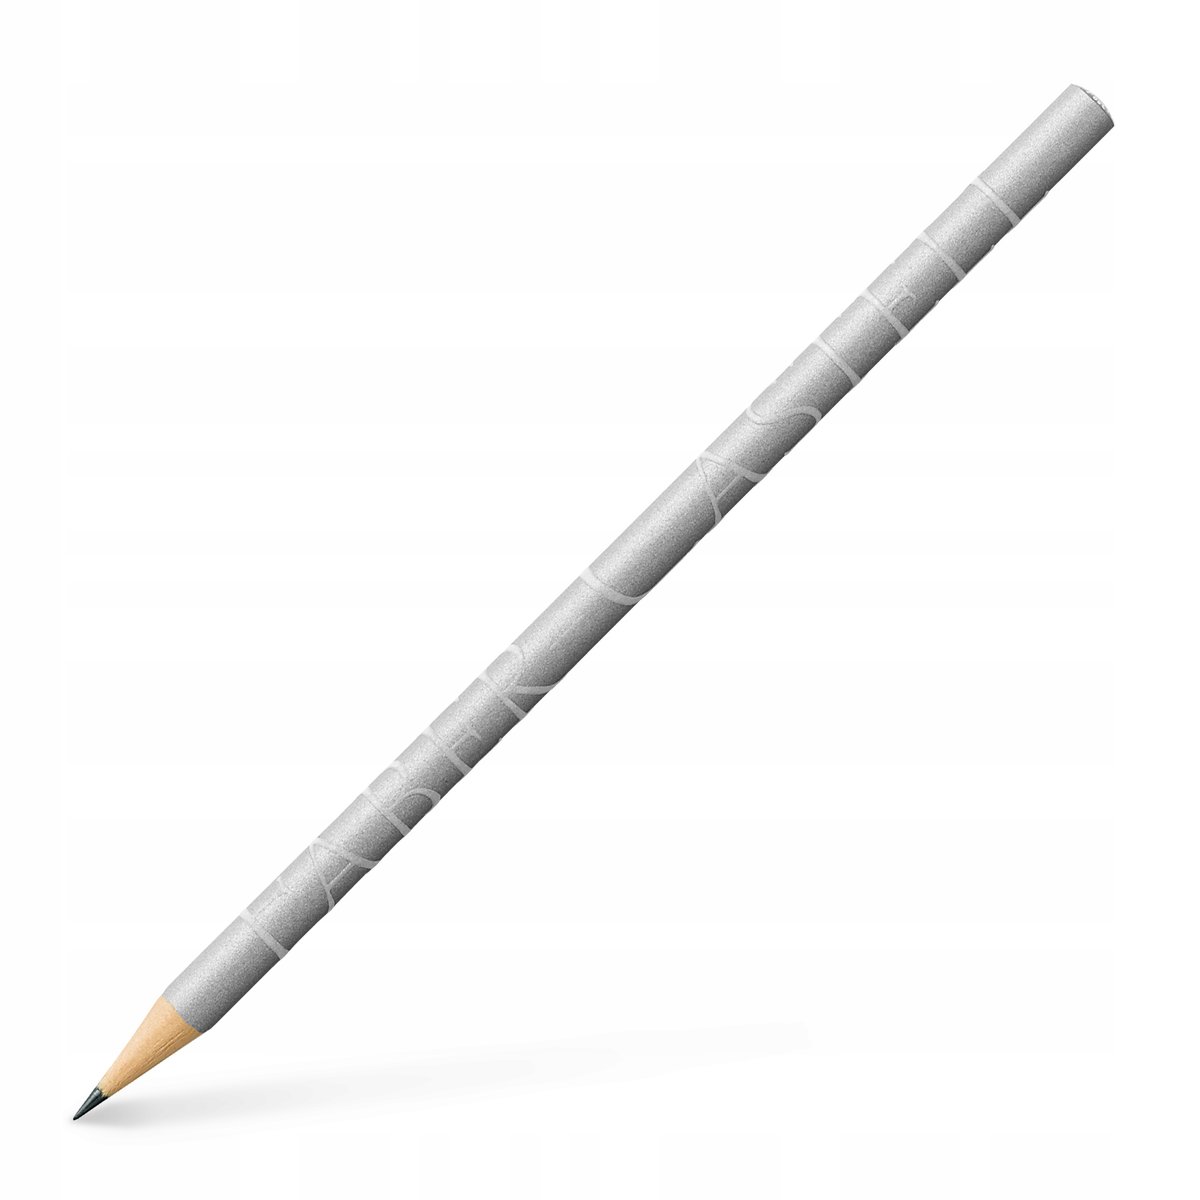 FaberCastell jubileusz ołówek wzornictwo Srebrny 118331